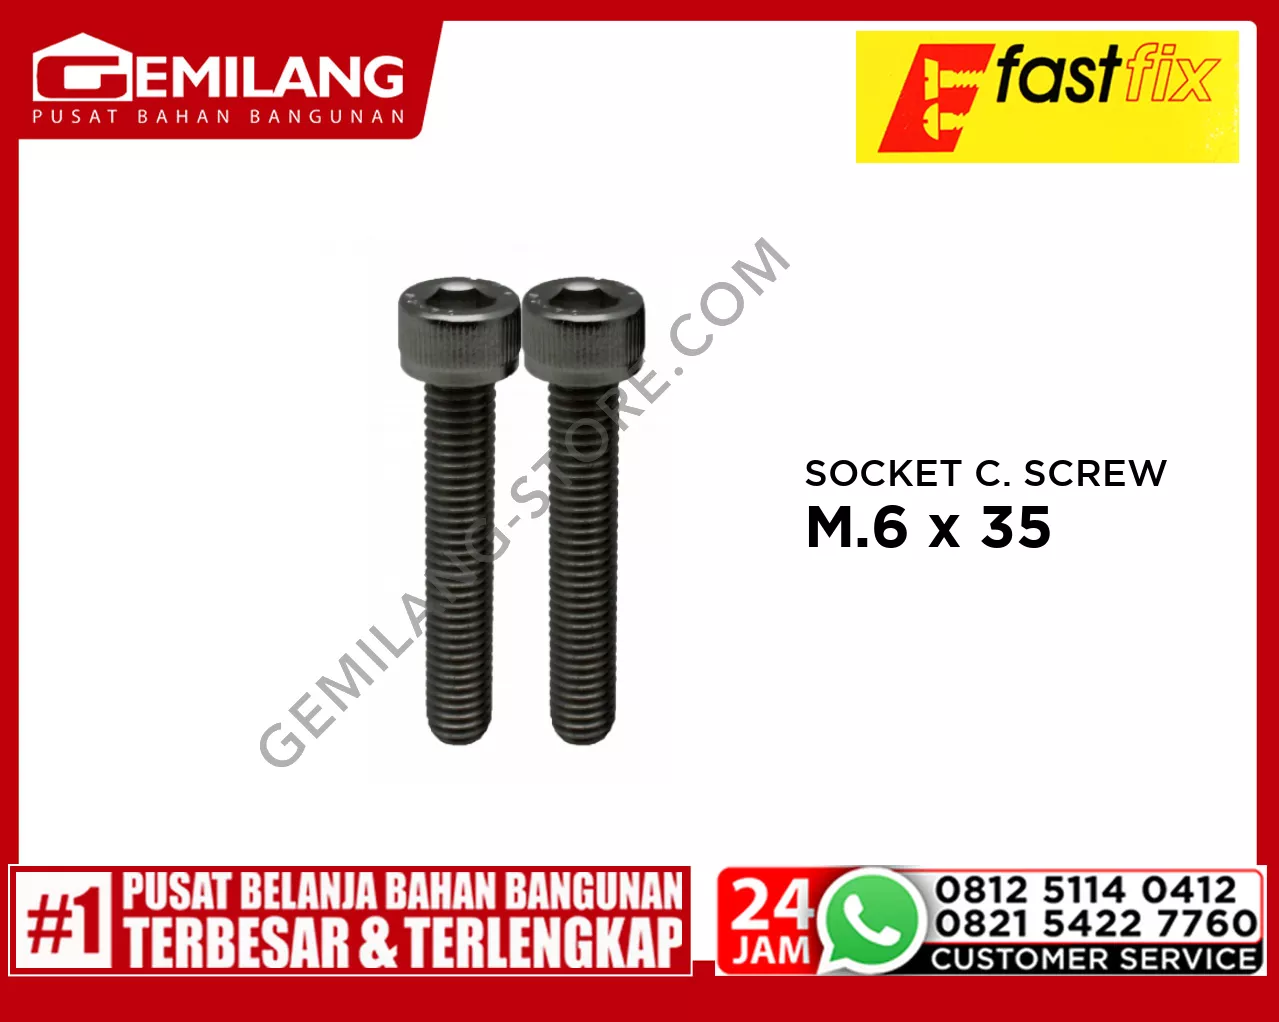 FAST FIX SOCKET CAP SCREW SS304 M.6 x 35 2pc/PAK